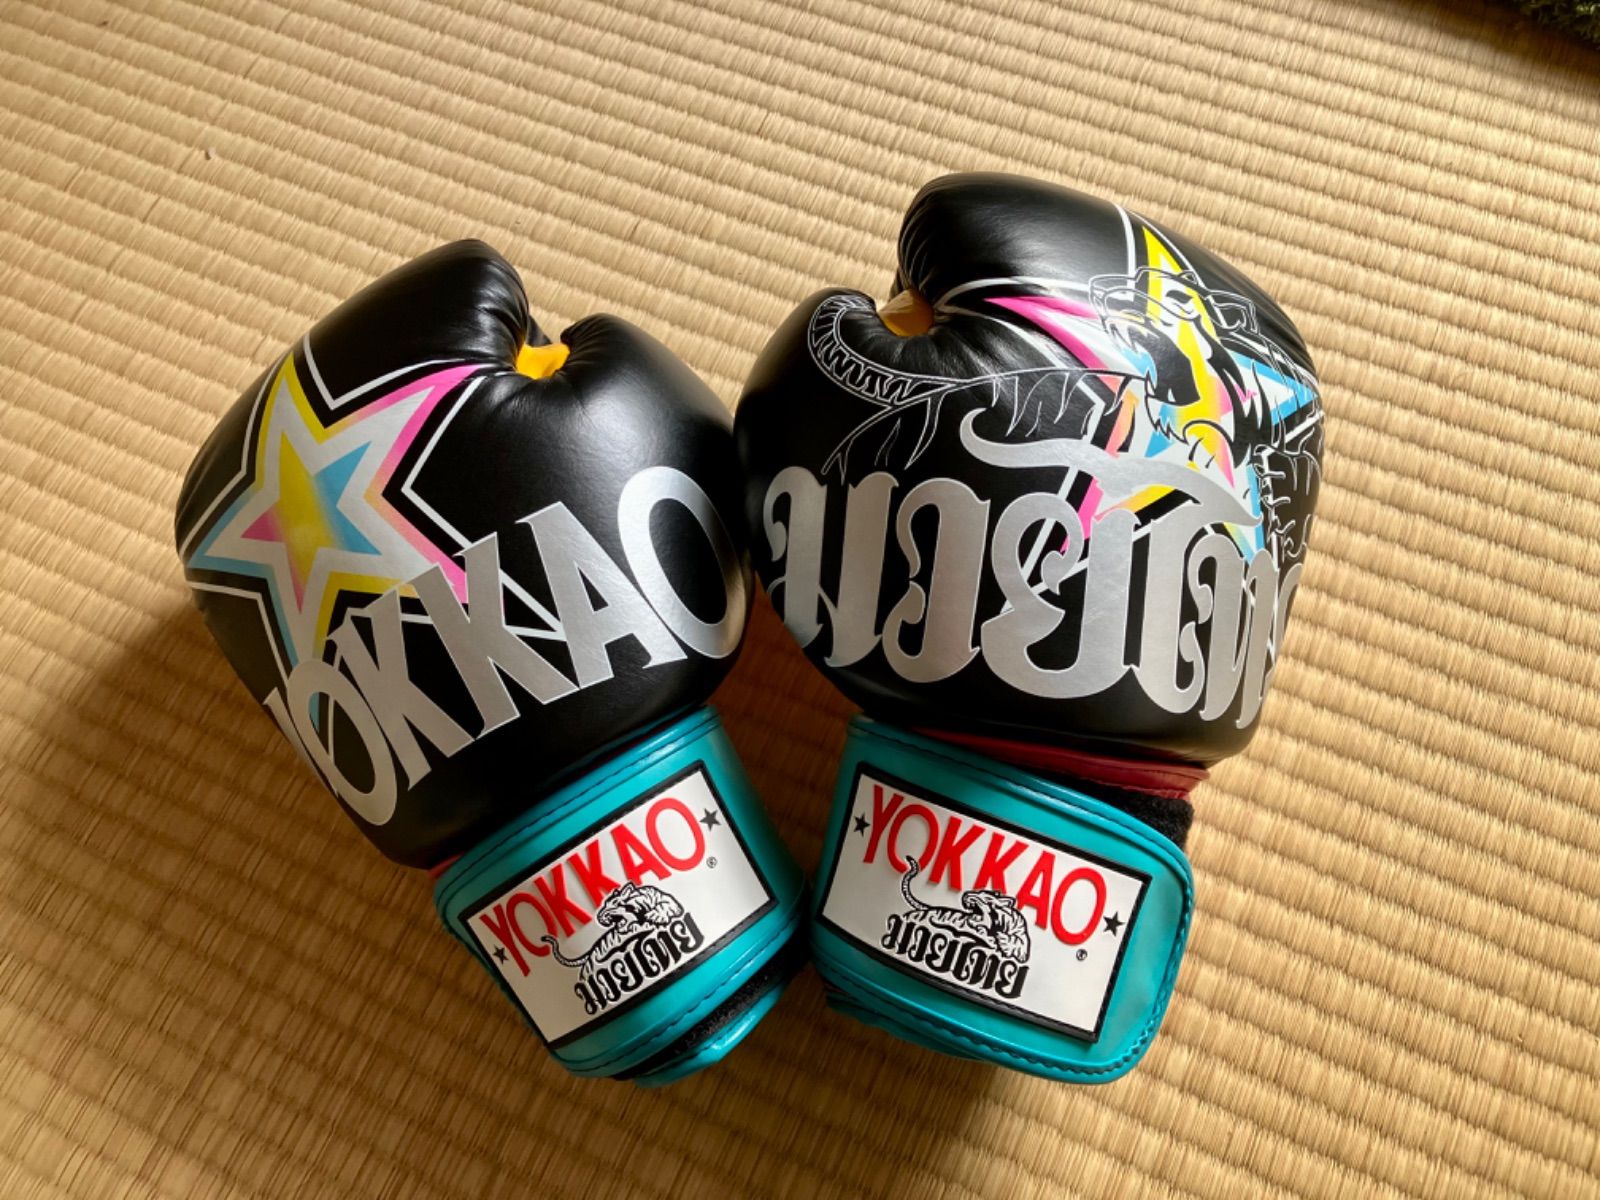 YOKKAOボクシンググローブ - ボクシング